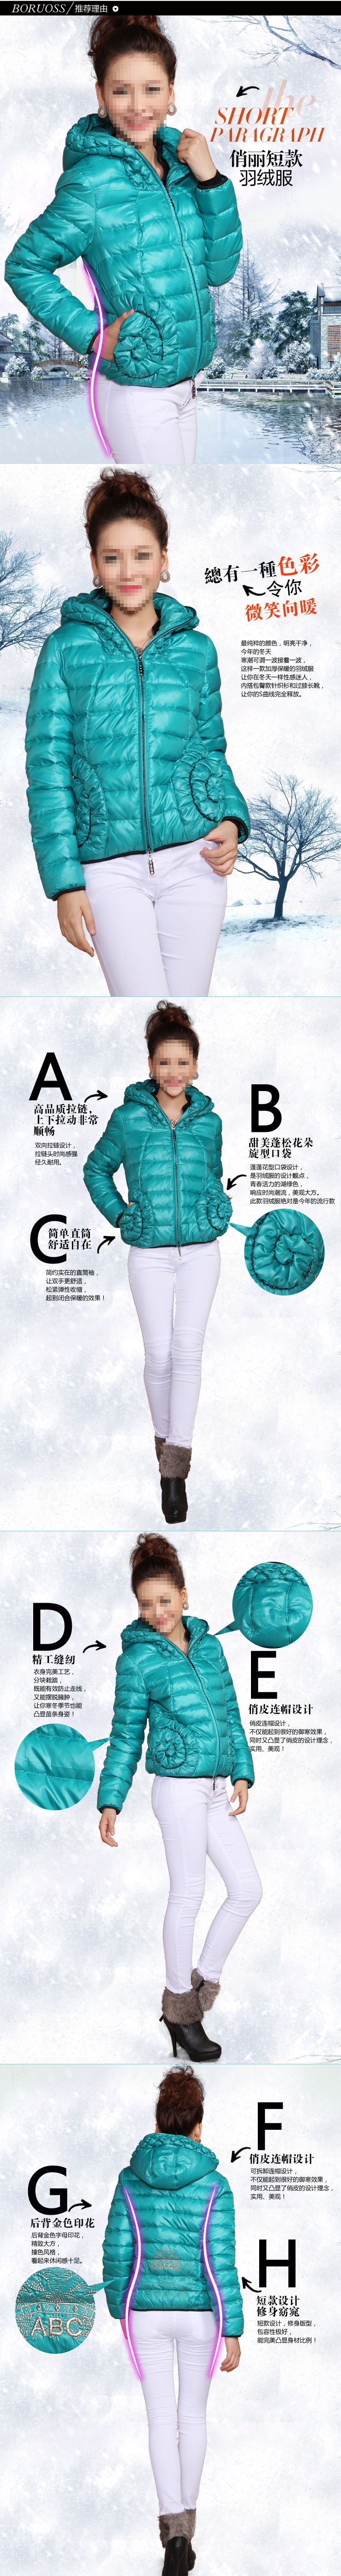 保暖白鸭绒羽绒服冬季保暖衣描述